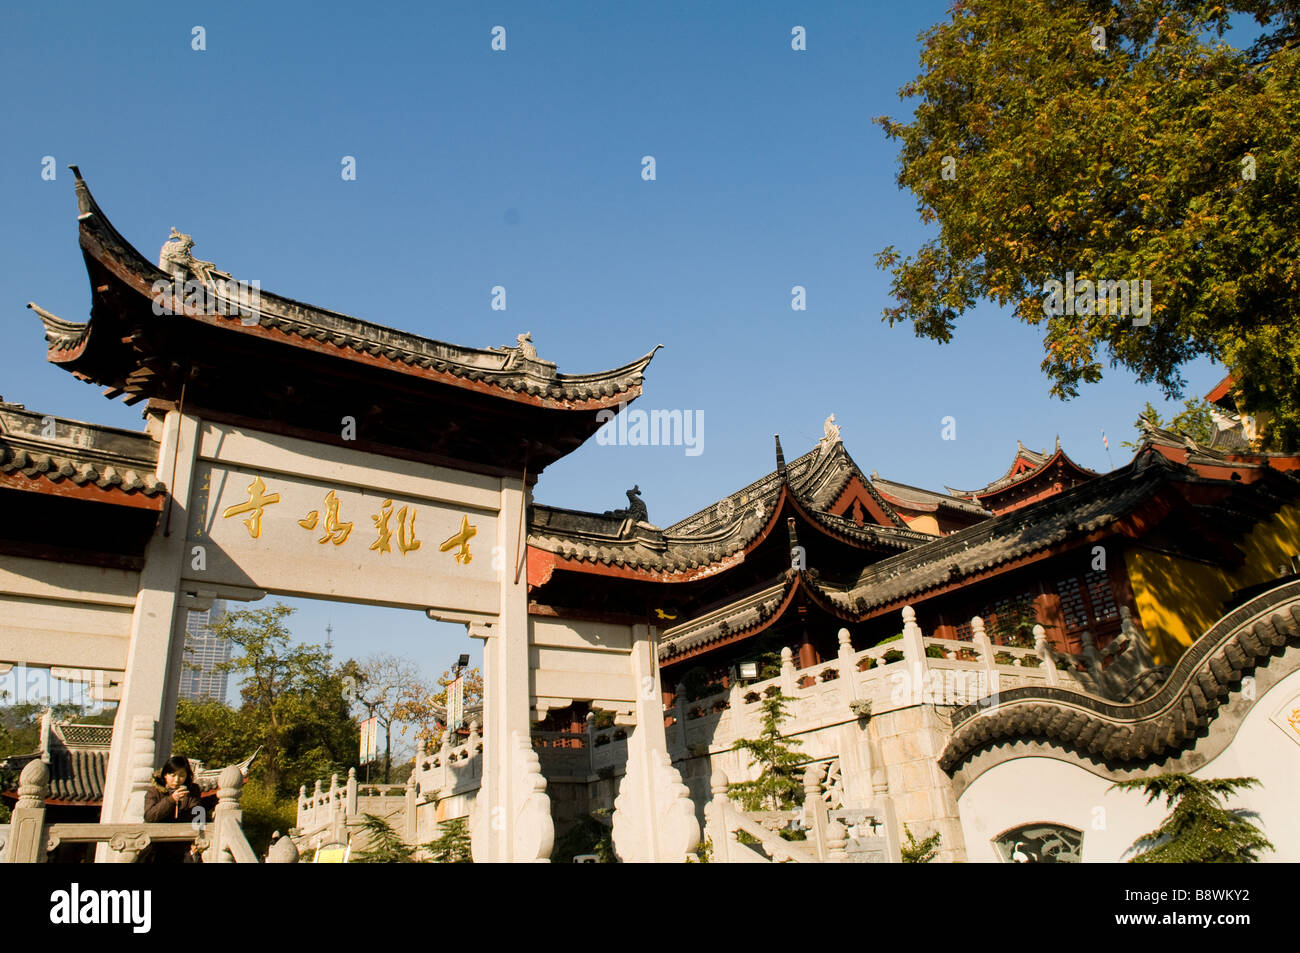 Beautiful classical Chinese architecture in jiming temple, Nanjing, Jiangsu, China. Stock Photo